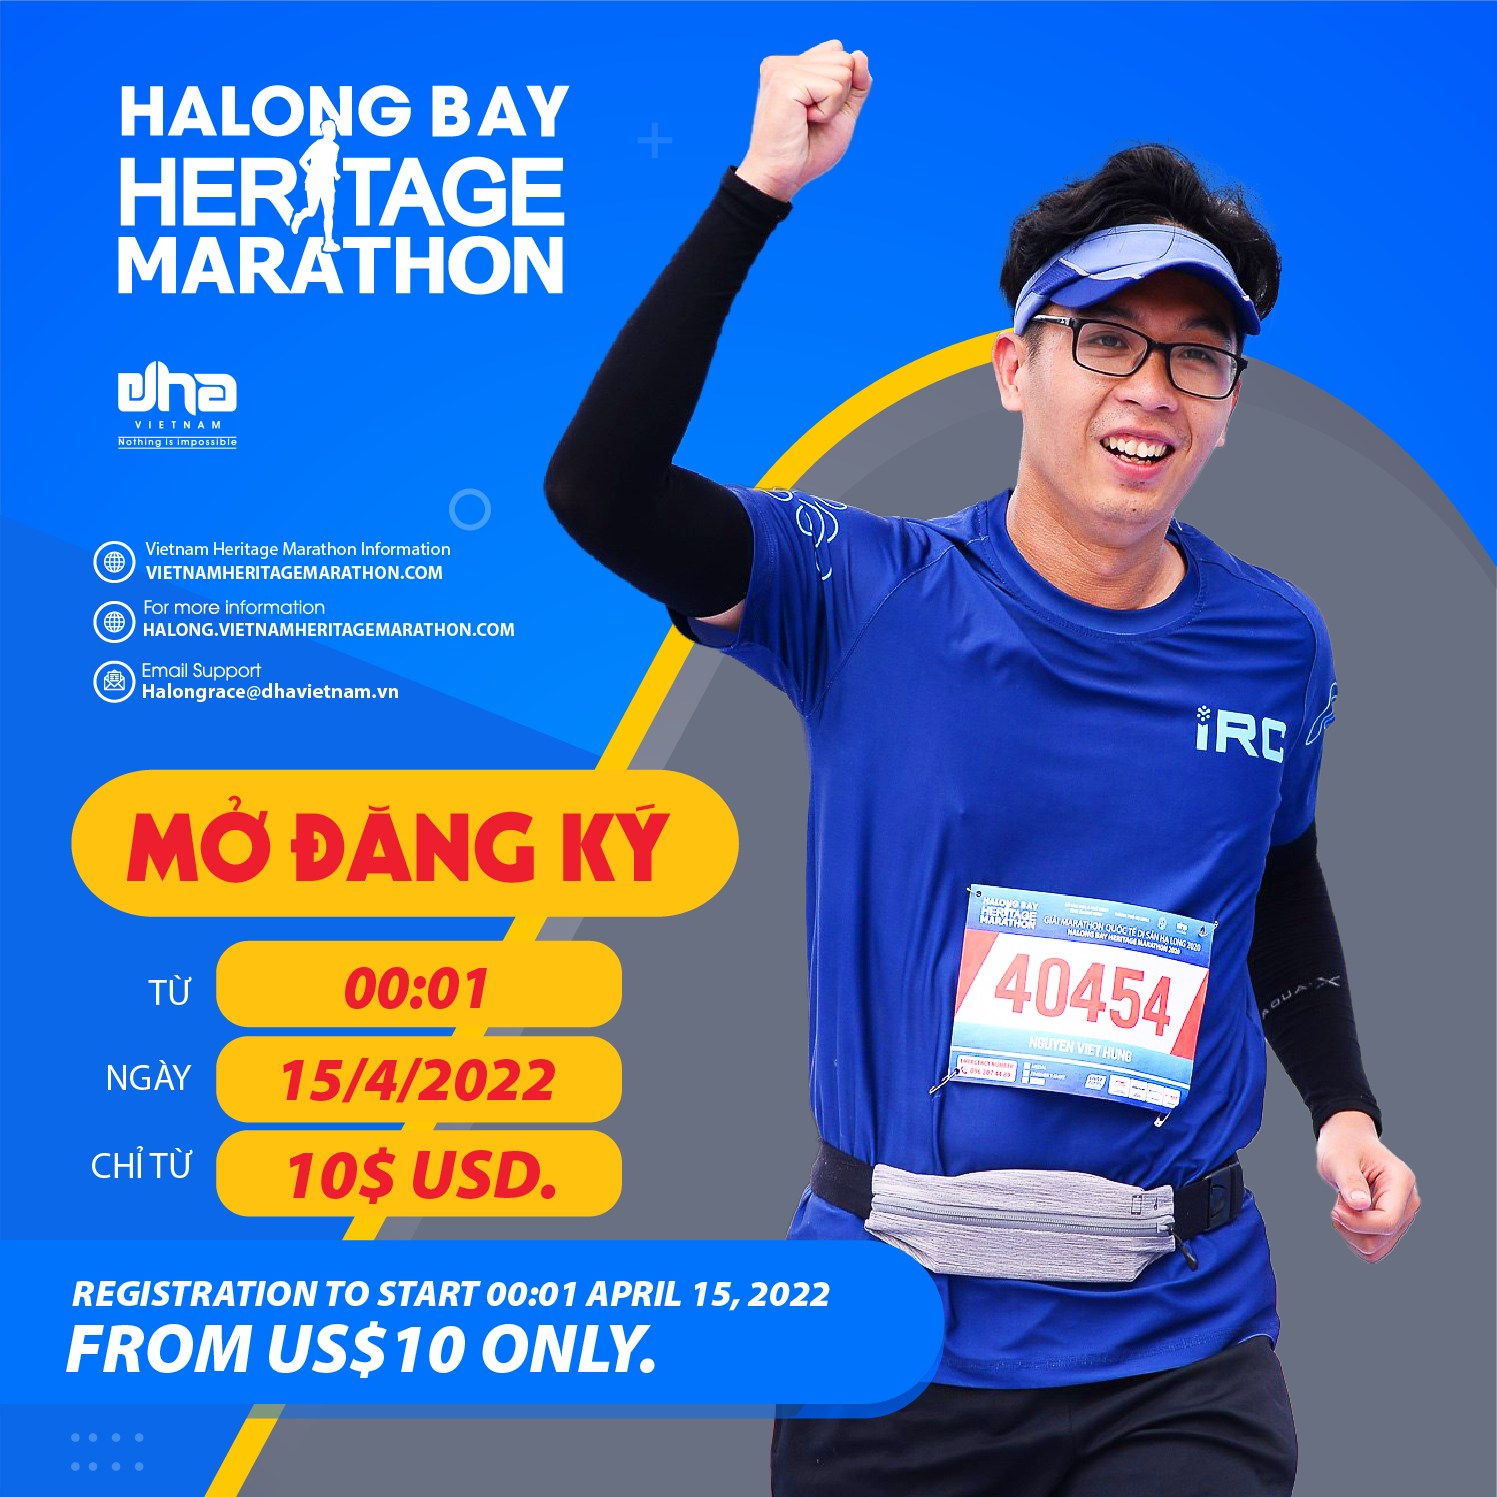 Halong Bay Heritage Marathon Registration To Start April 15